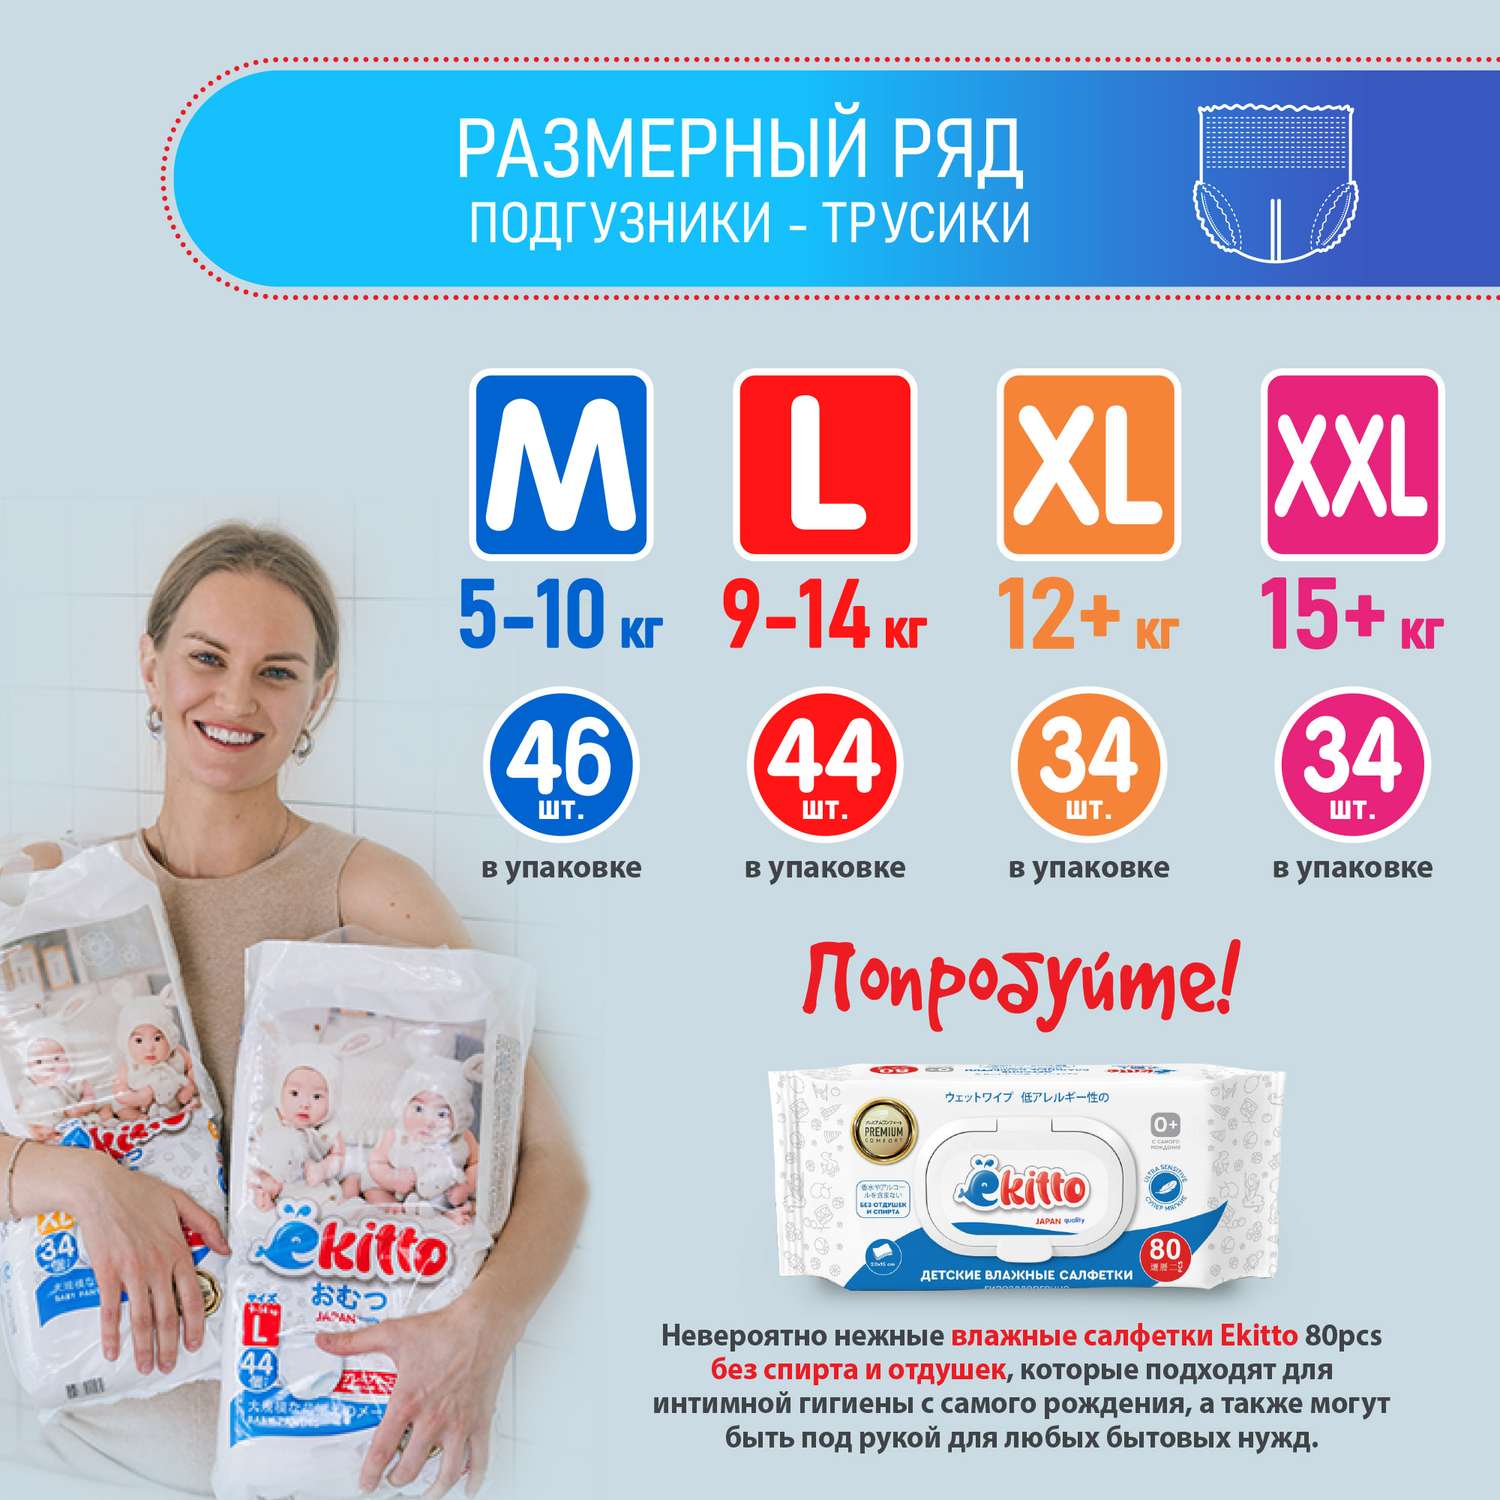 Подгузники-трусики Ekitto 6 размер XXL для новорожденных детей от 15-20 кг 34 шт - фото 9